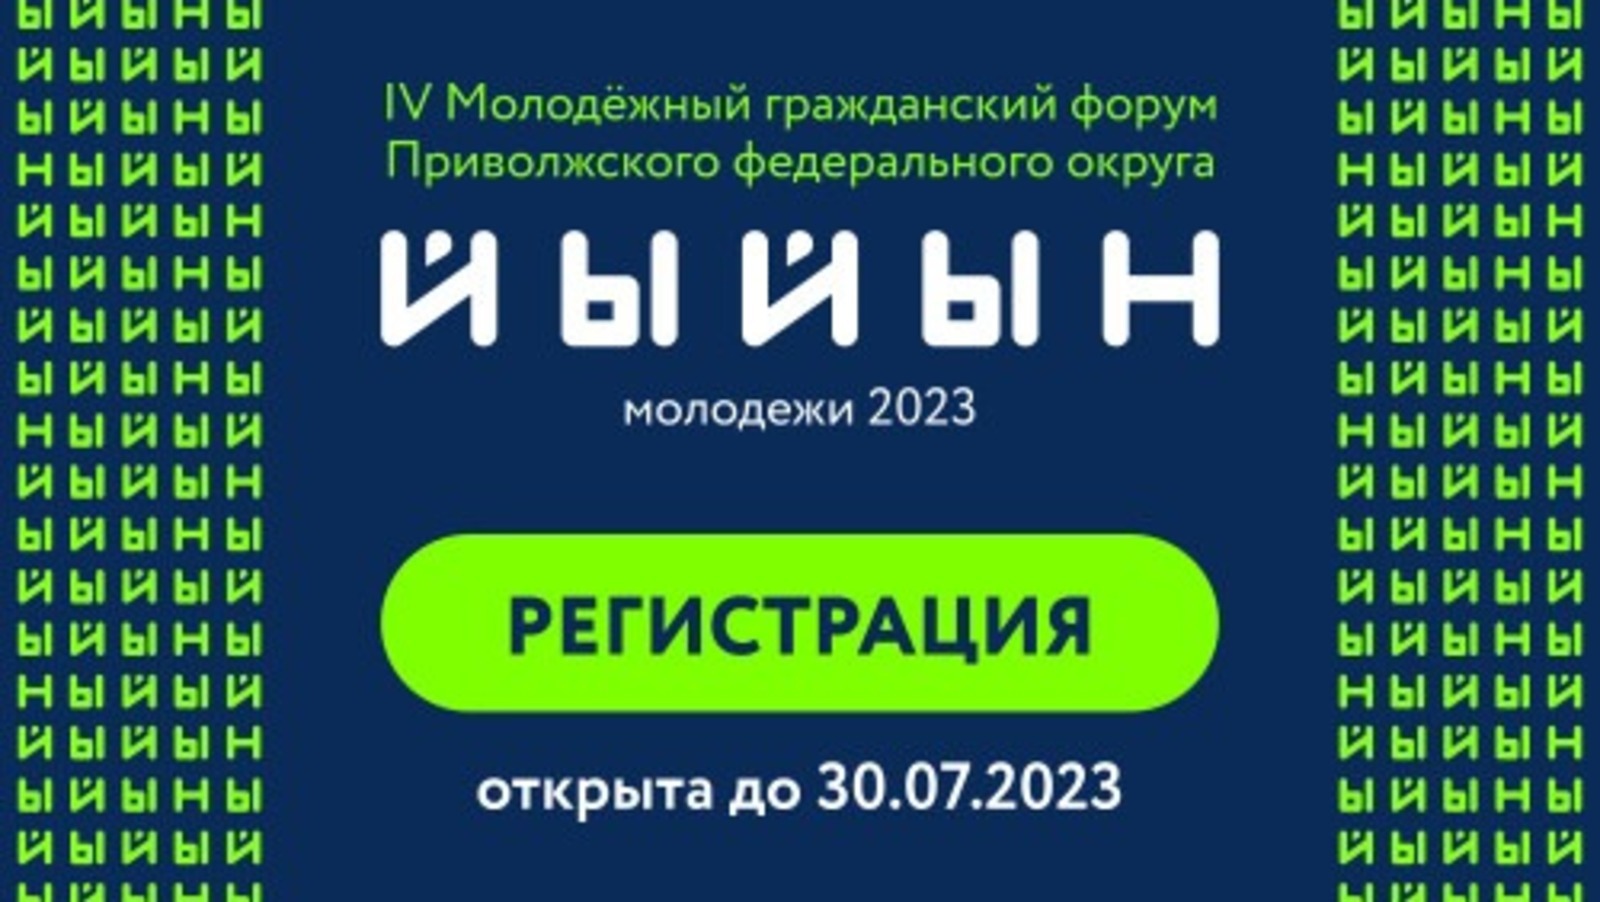 В Башкирии пройдет IV молодежный гражданский форум ПФО «Йыйын молодежи – 2023»